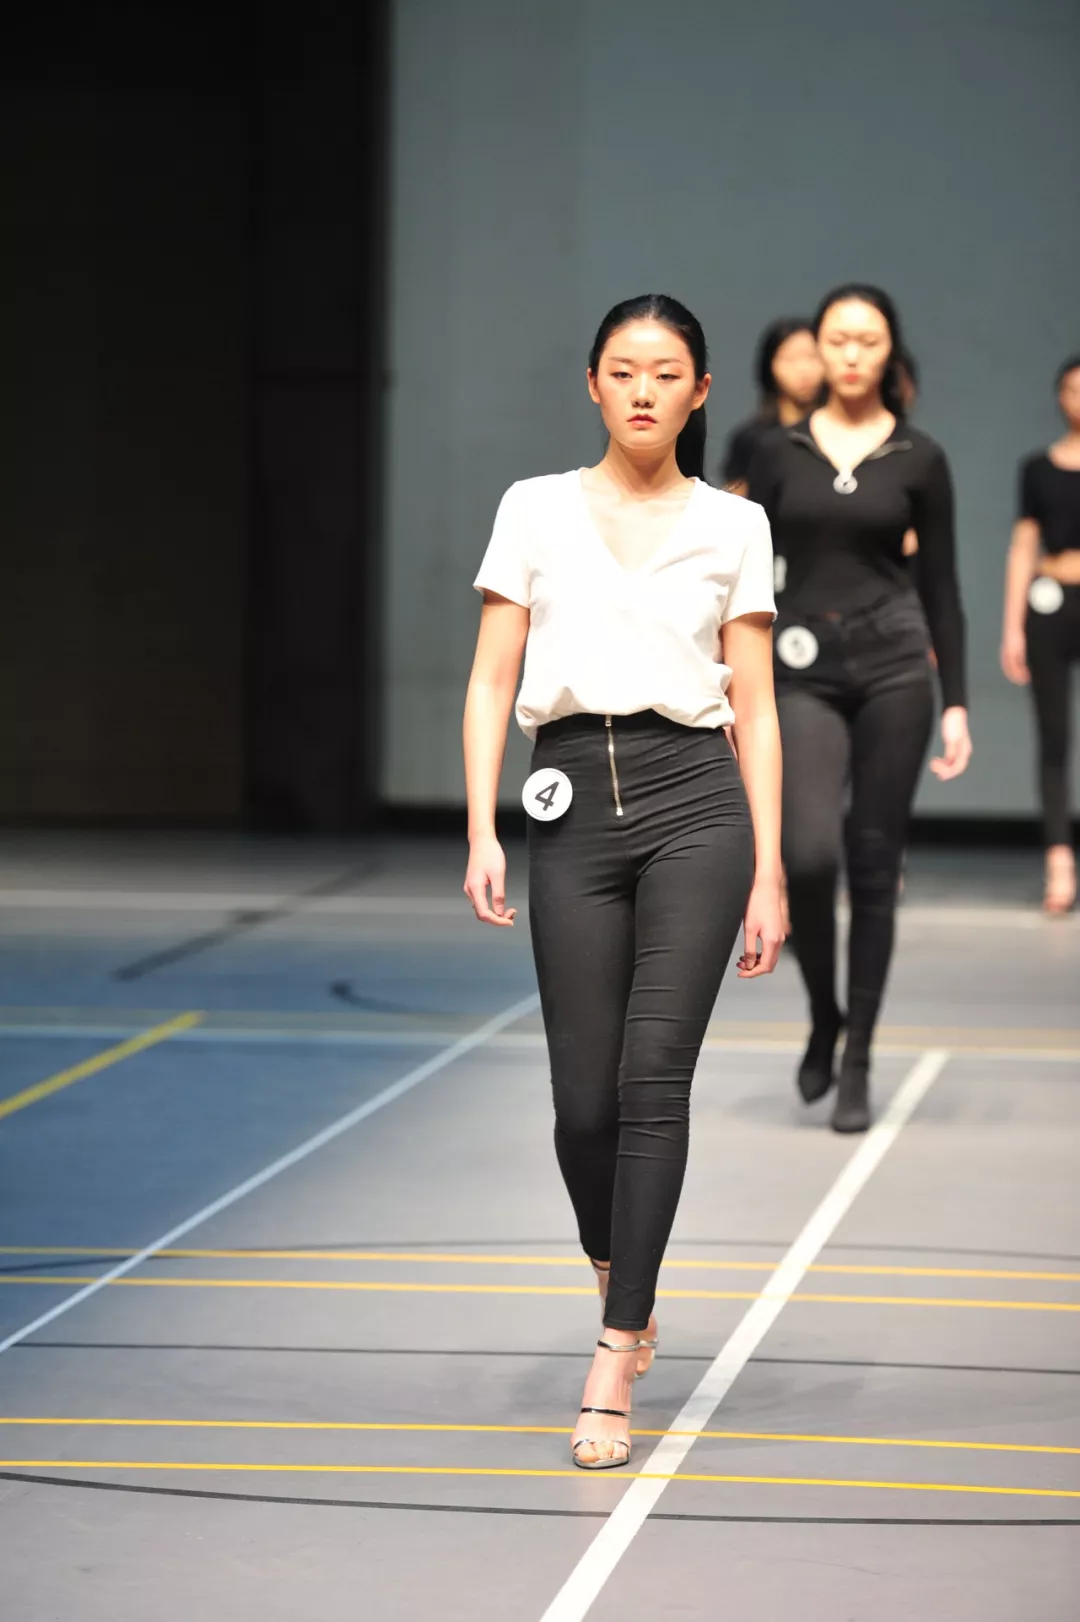 nsr丨中国国际时装周2019/2020秋冬系列模特大面试